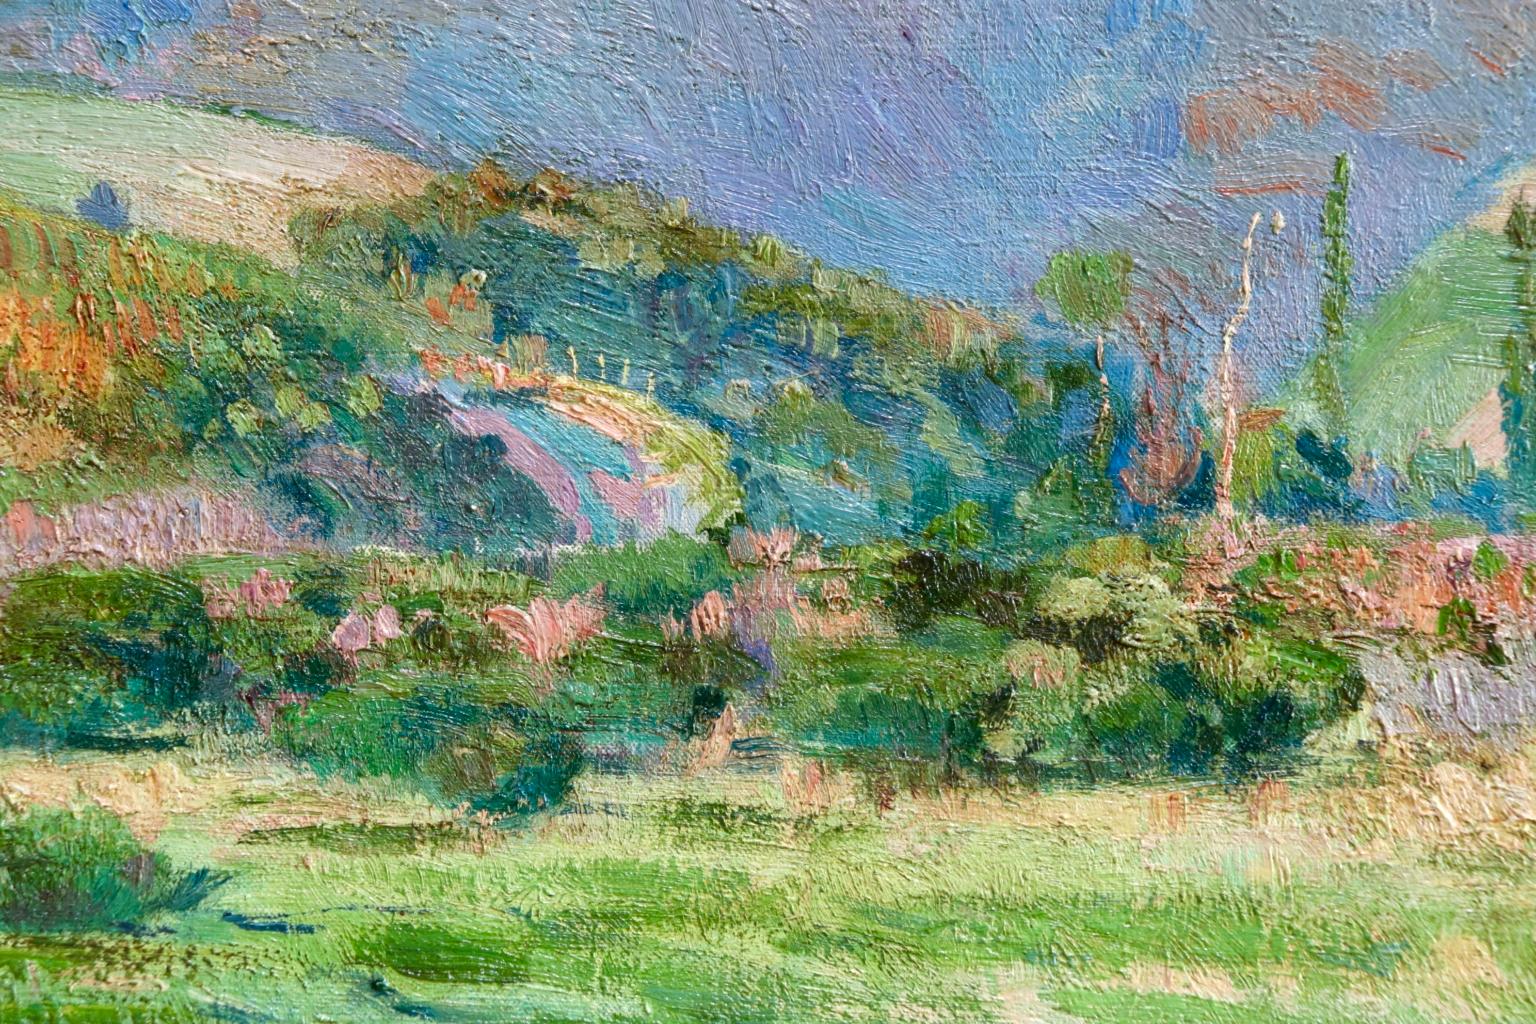 Donzy-le-Perthuis - Burgundy - Post Impressionist Oil, Landscape - H Petitjean 1